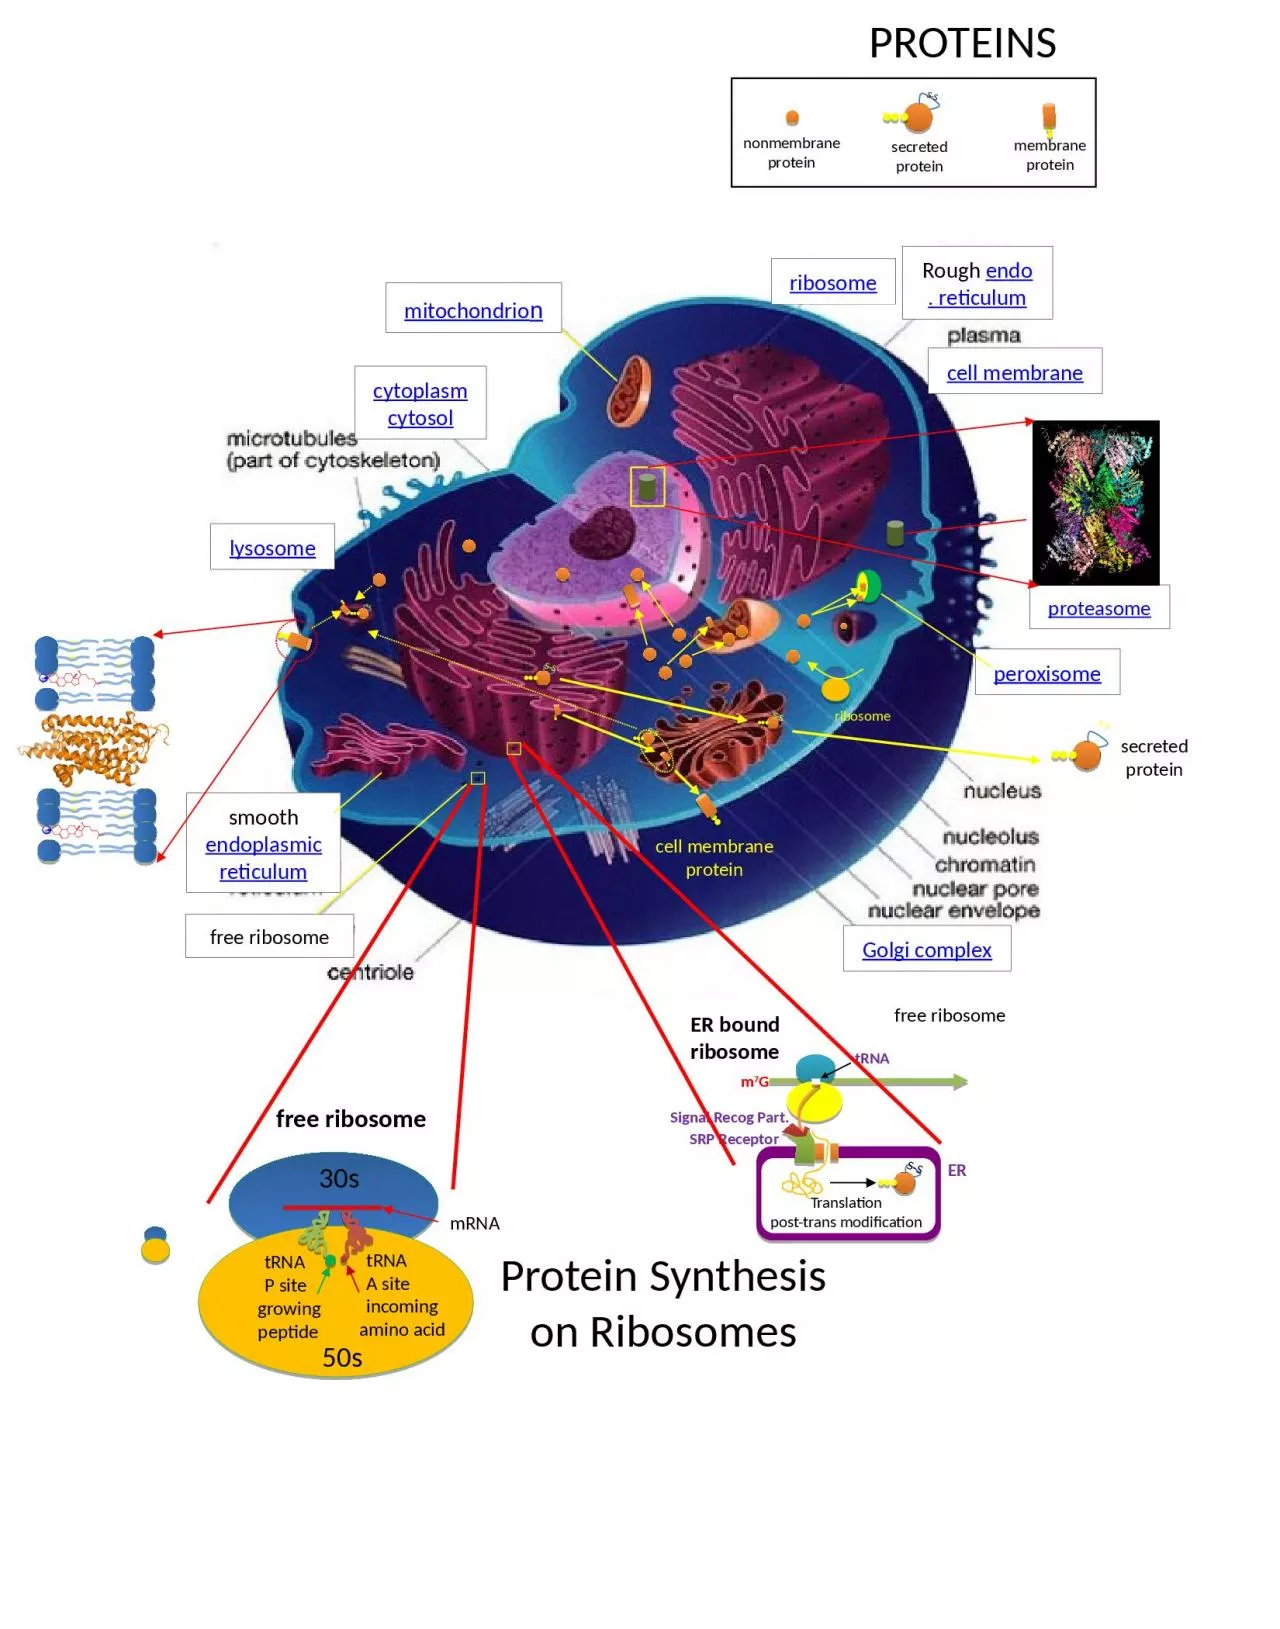 mitochondrio n cytoplasm